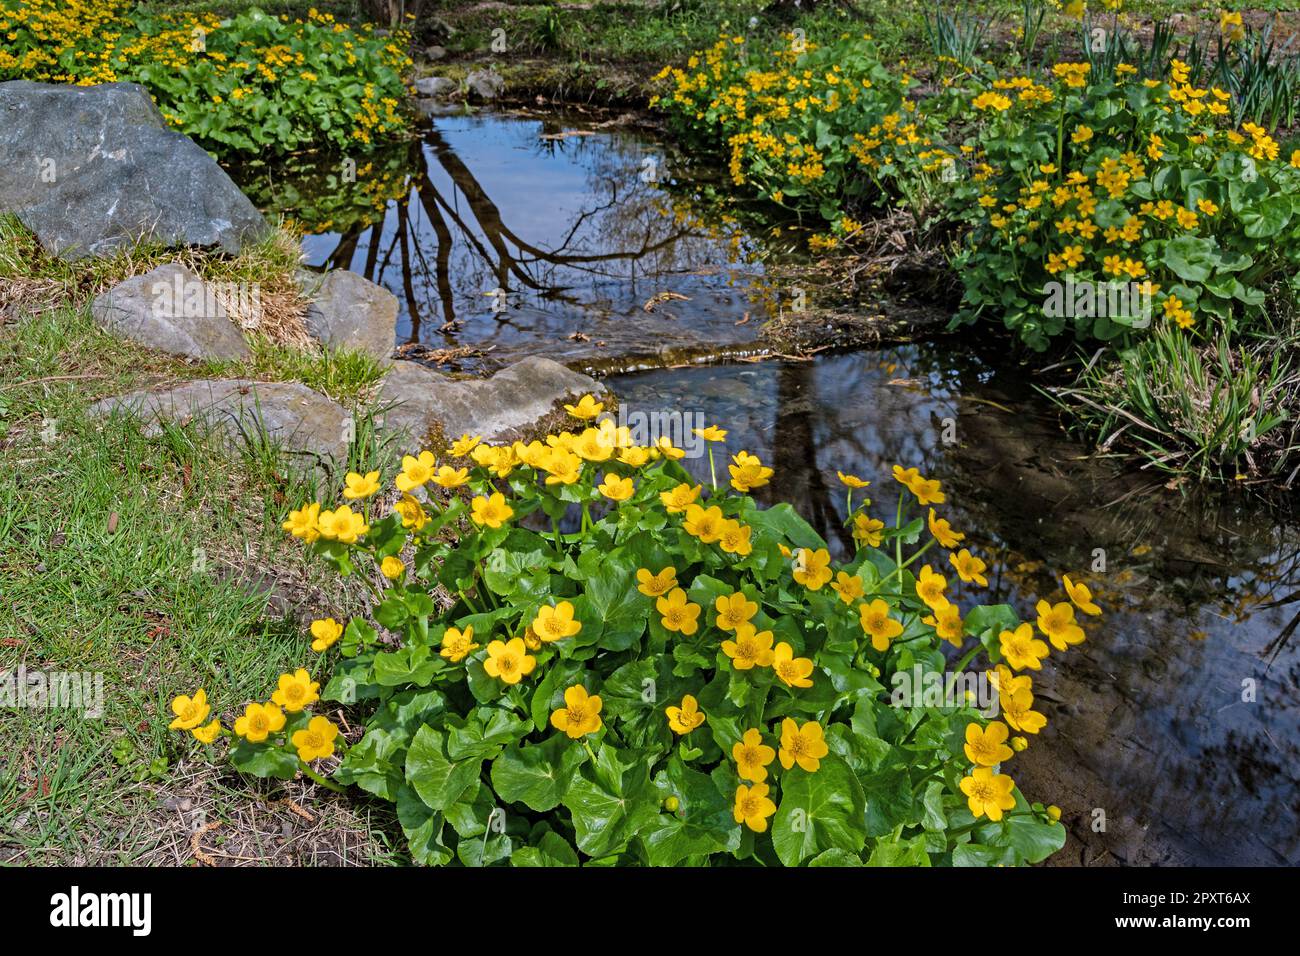 Arroyo con un mar de flores verdes adornando sus orillas, en el Parque de los Sentidos Foto de stock